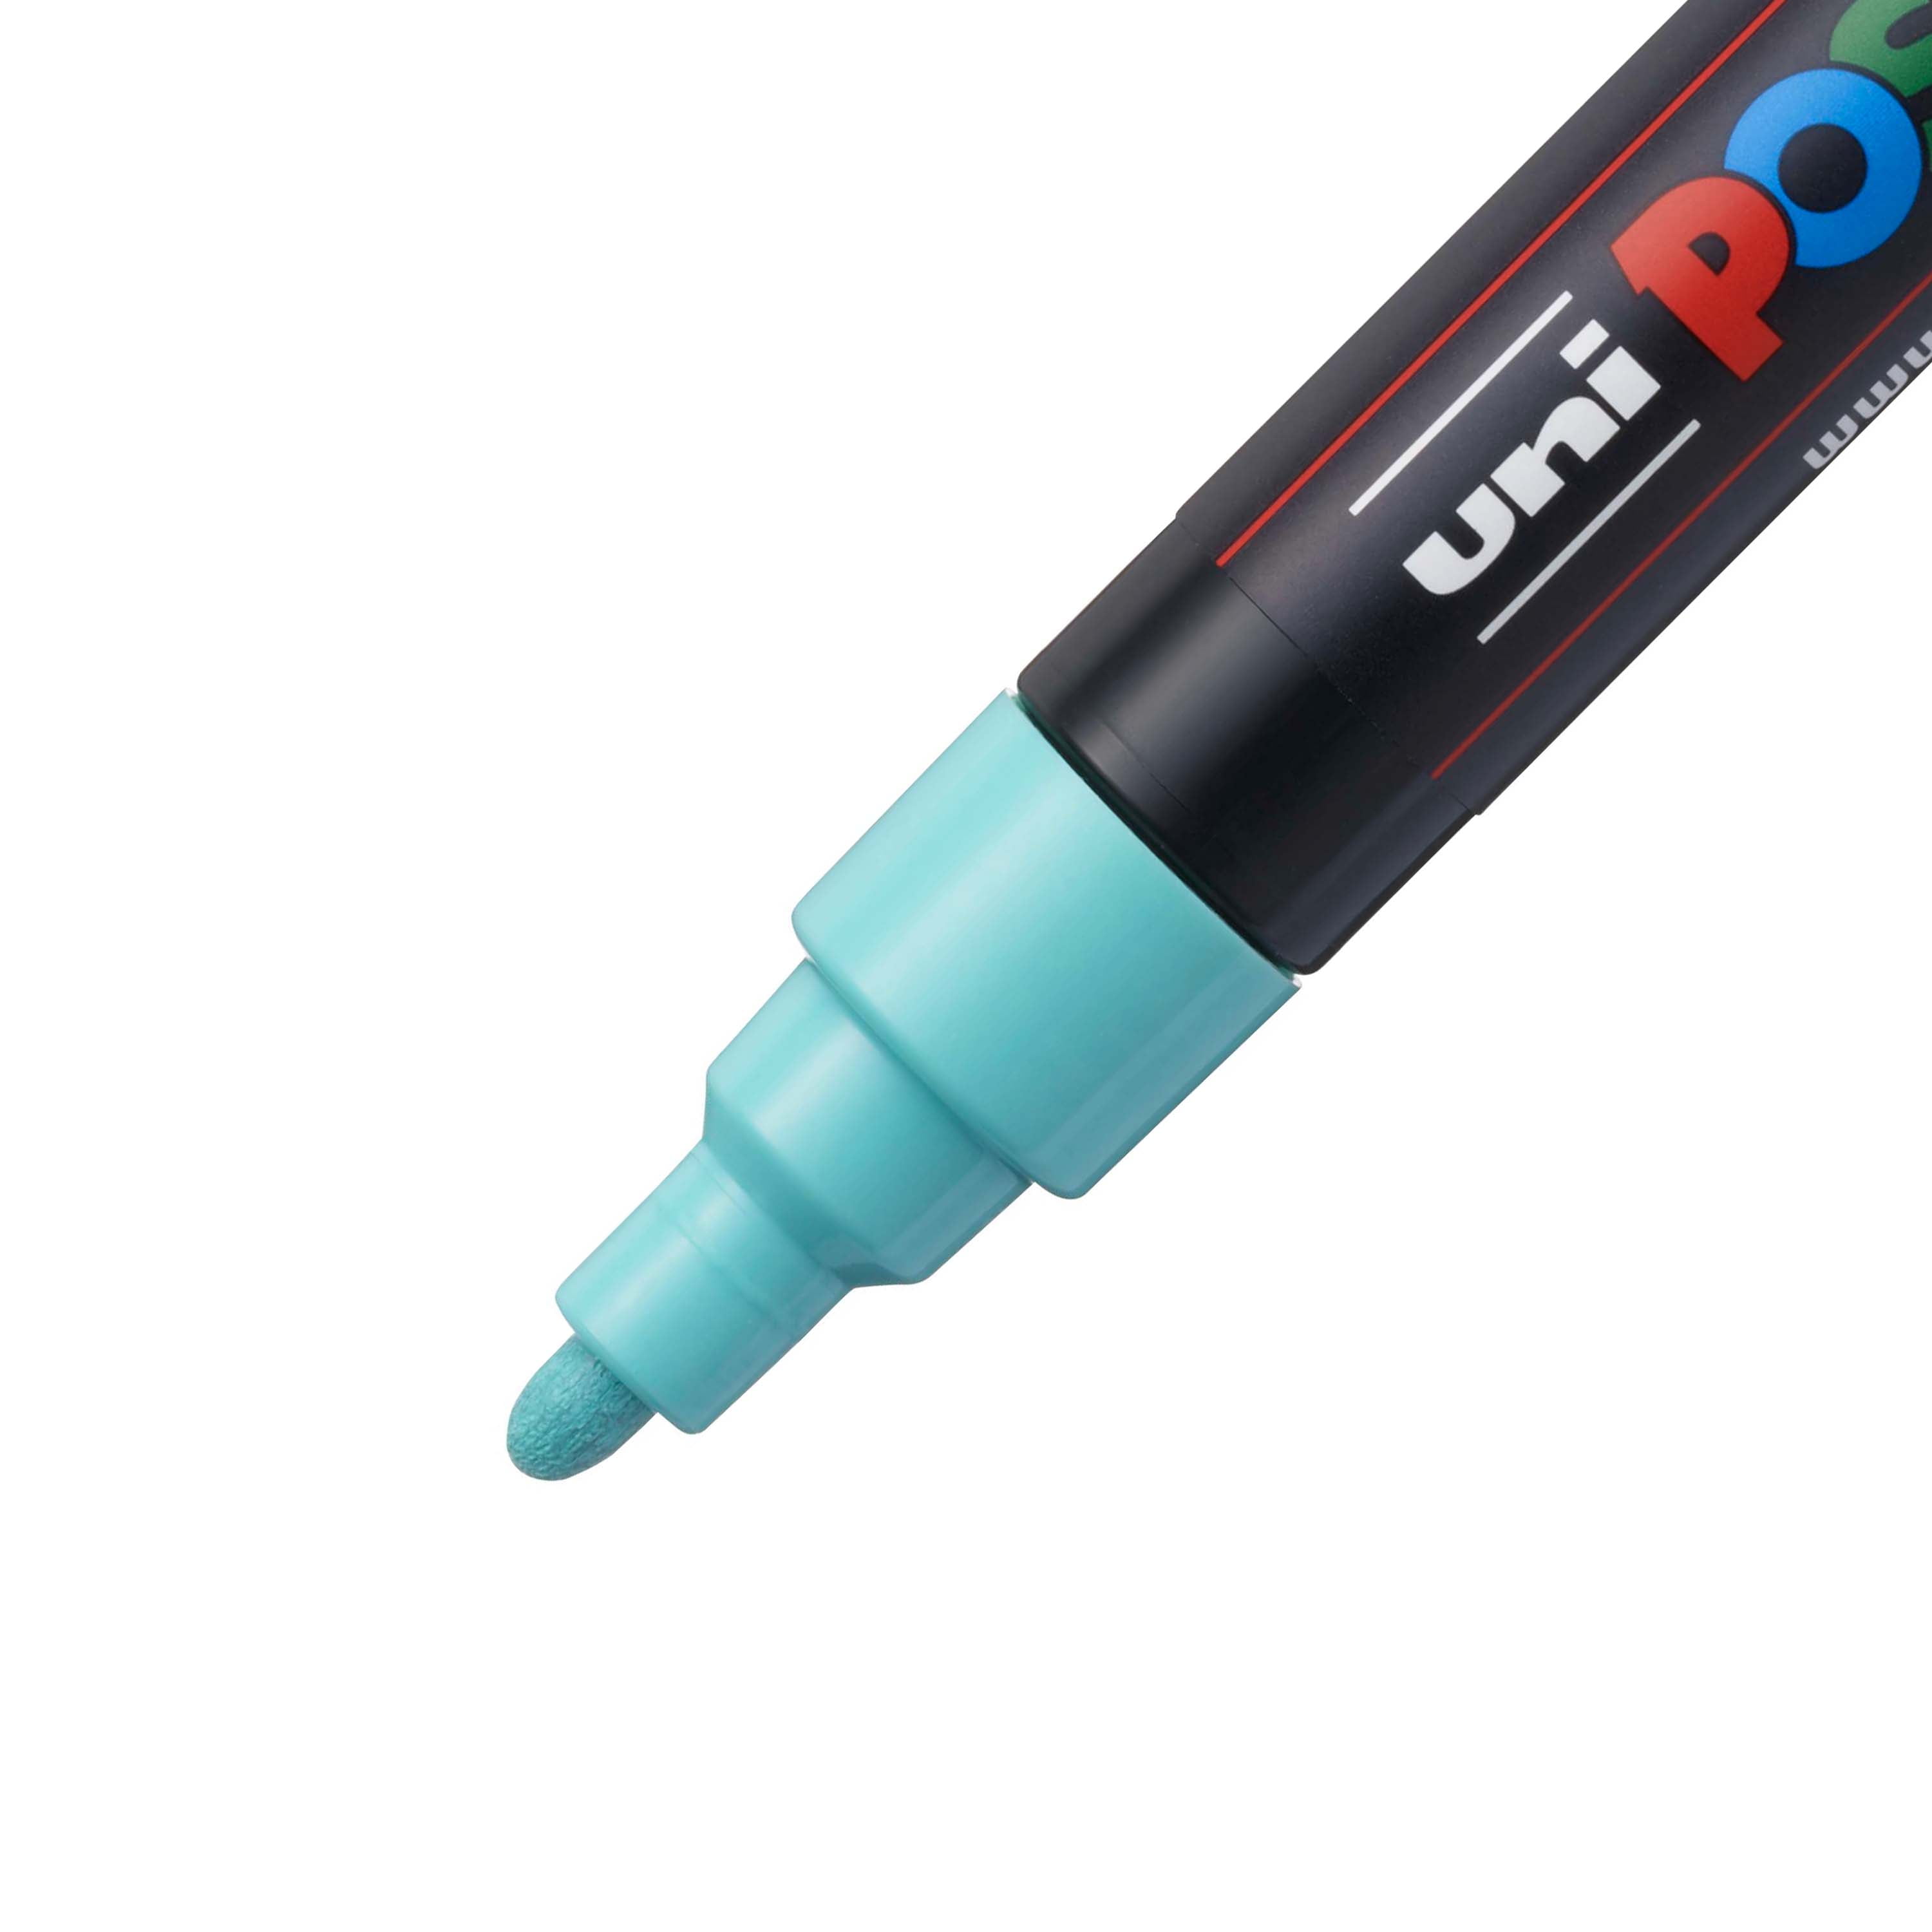 Uni Posca Acrylic Paint Marker Pens Set Plumones Marcadores Japanese S -  PC-5m 15 Colors Set - All City Shoppings